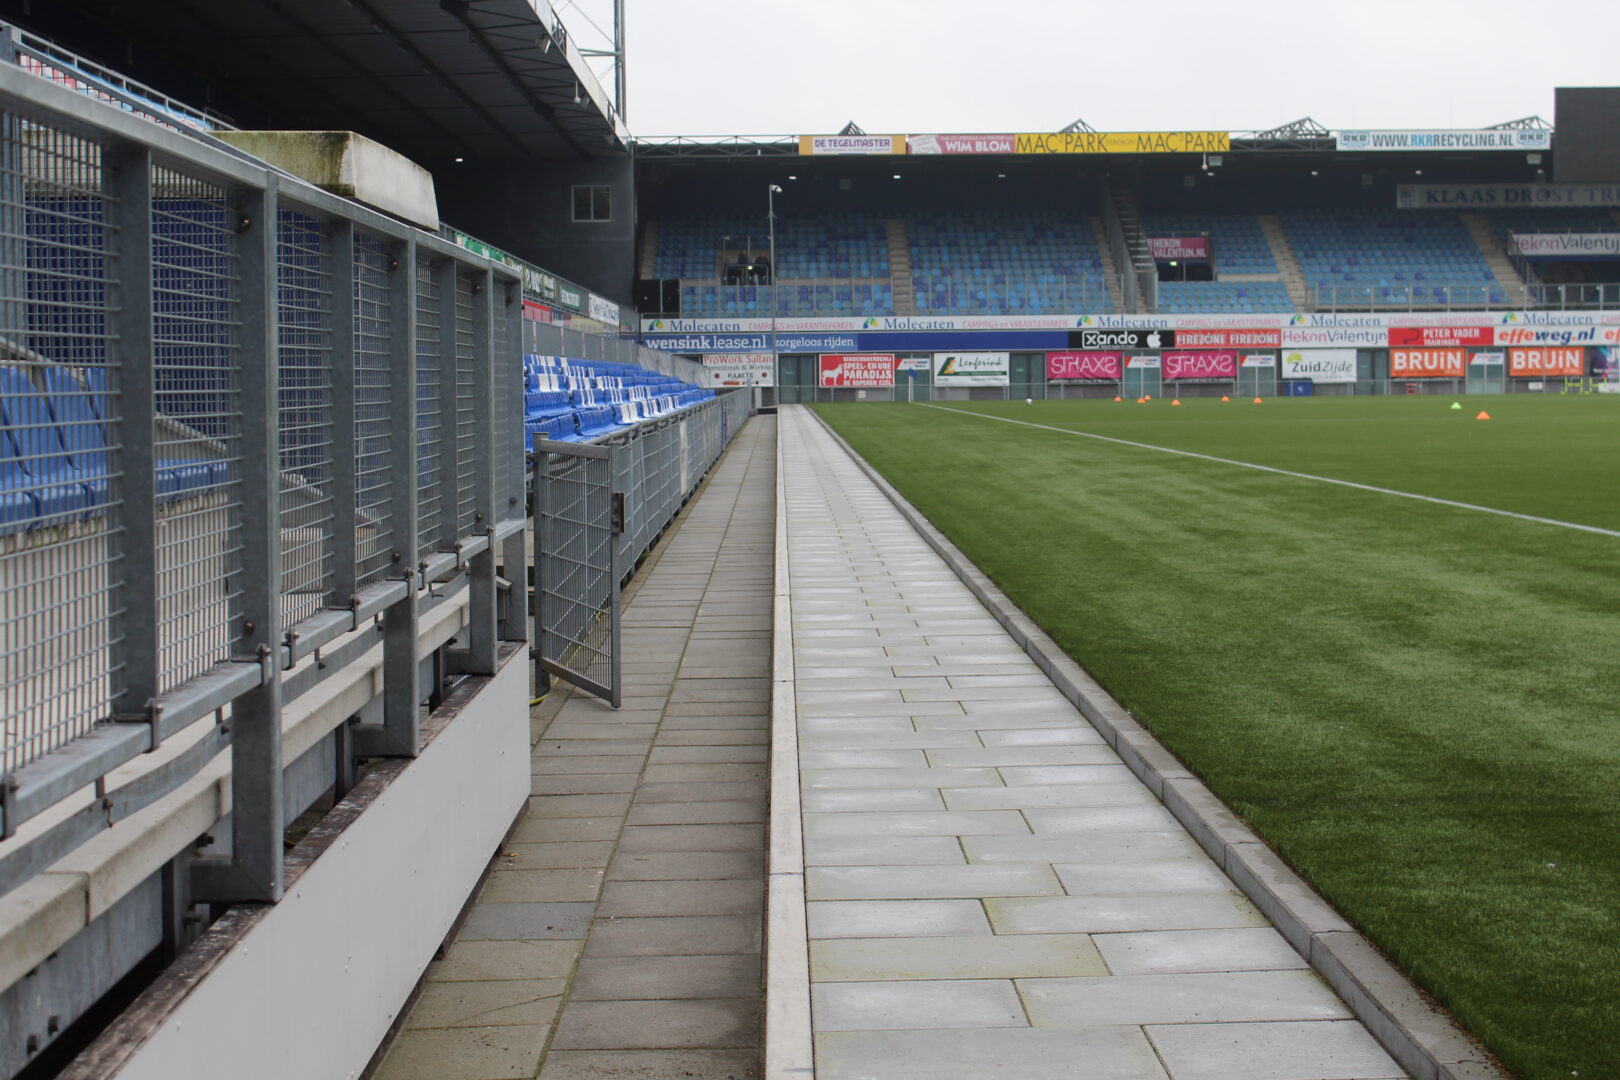 Bosch Beton - Keerwanden verhogen kunstgrasveld van PEC Zwolle